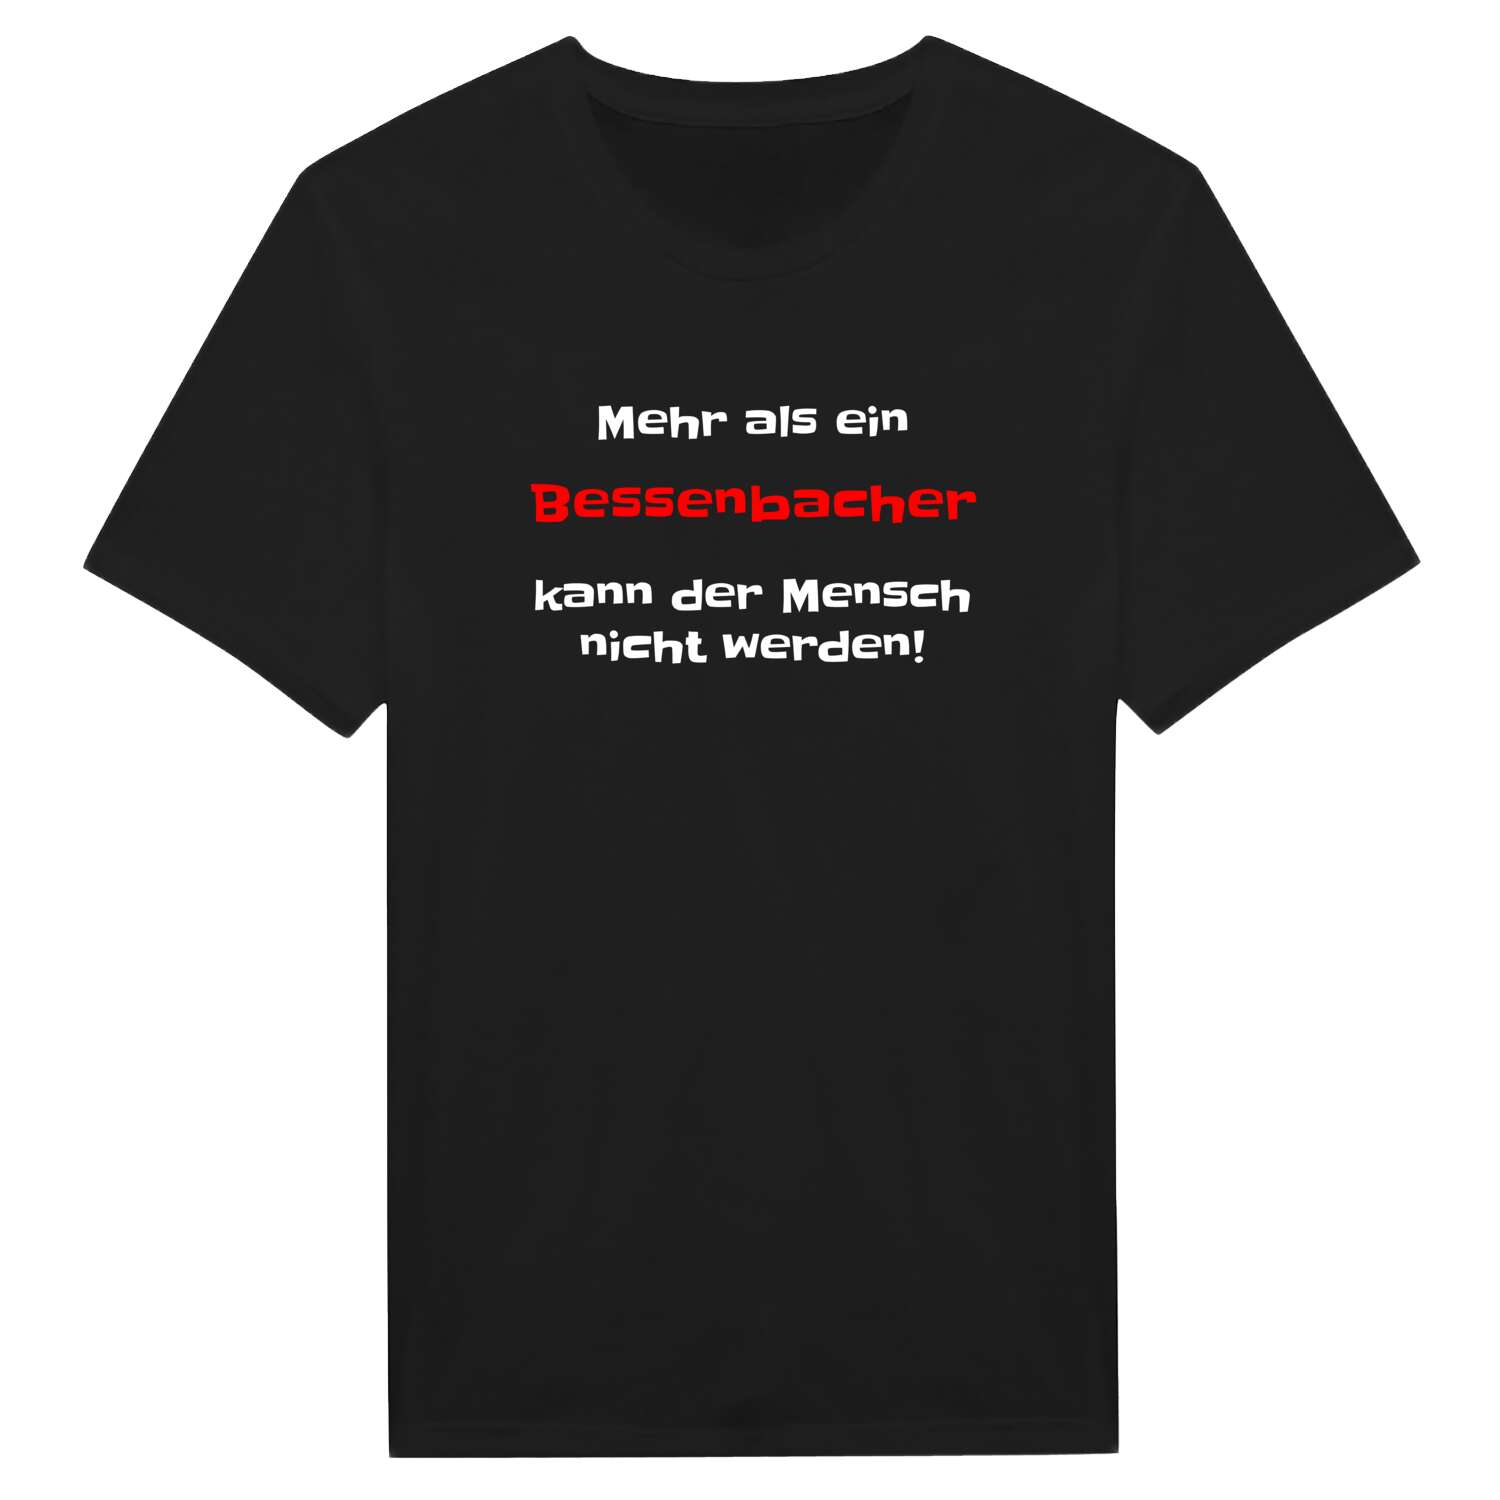 Bessenbach T-Shirt »Mehr als ein«